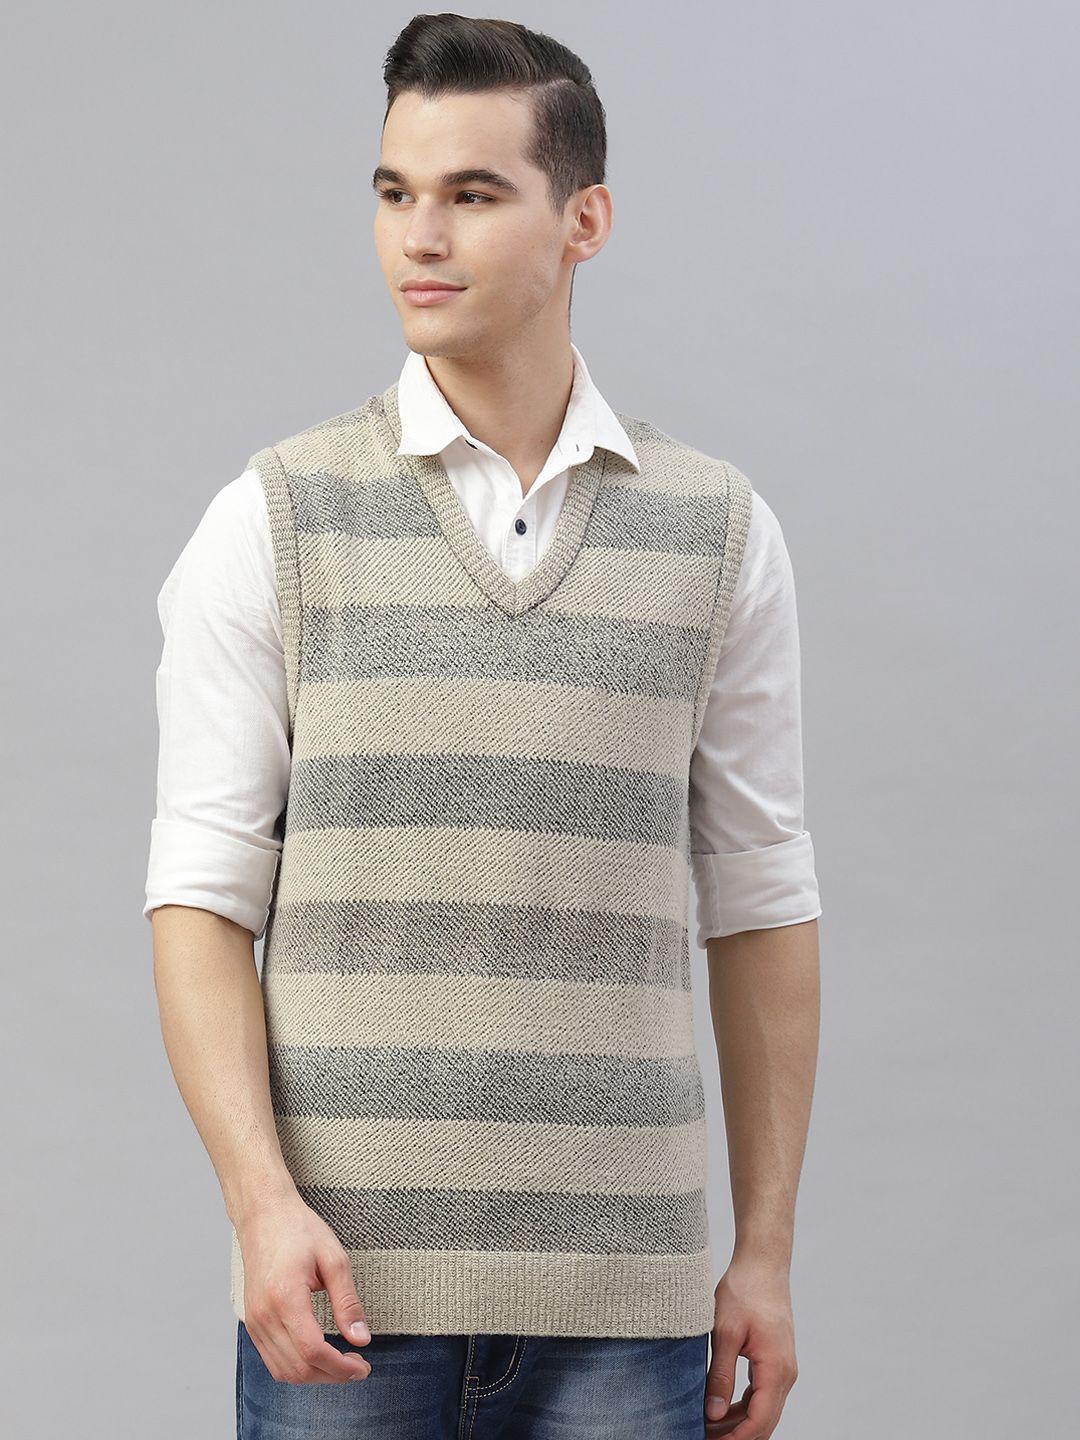 pierre carlo men beige & grey striped sweater vest